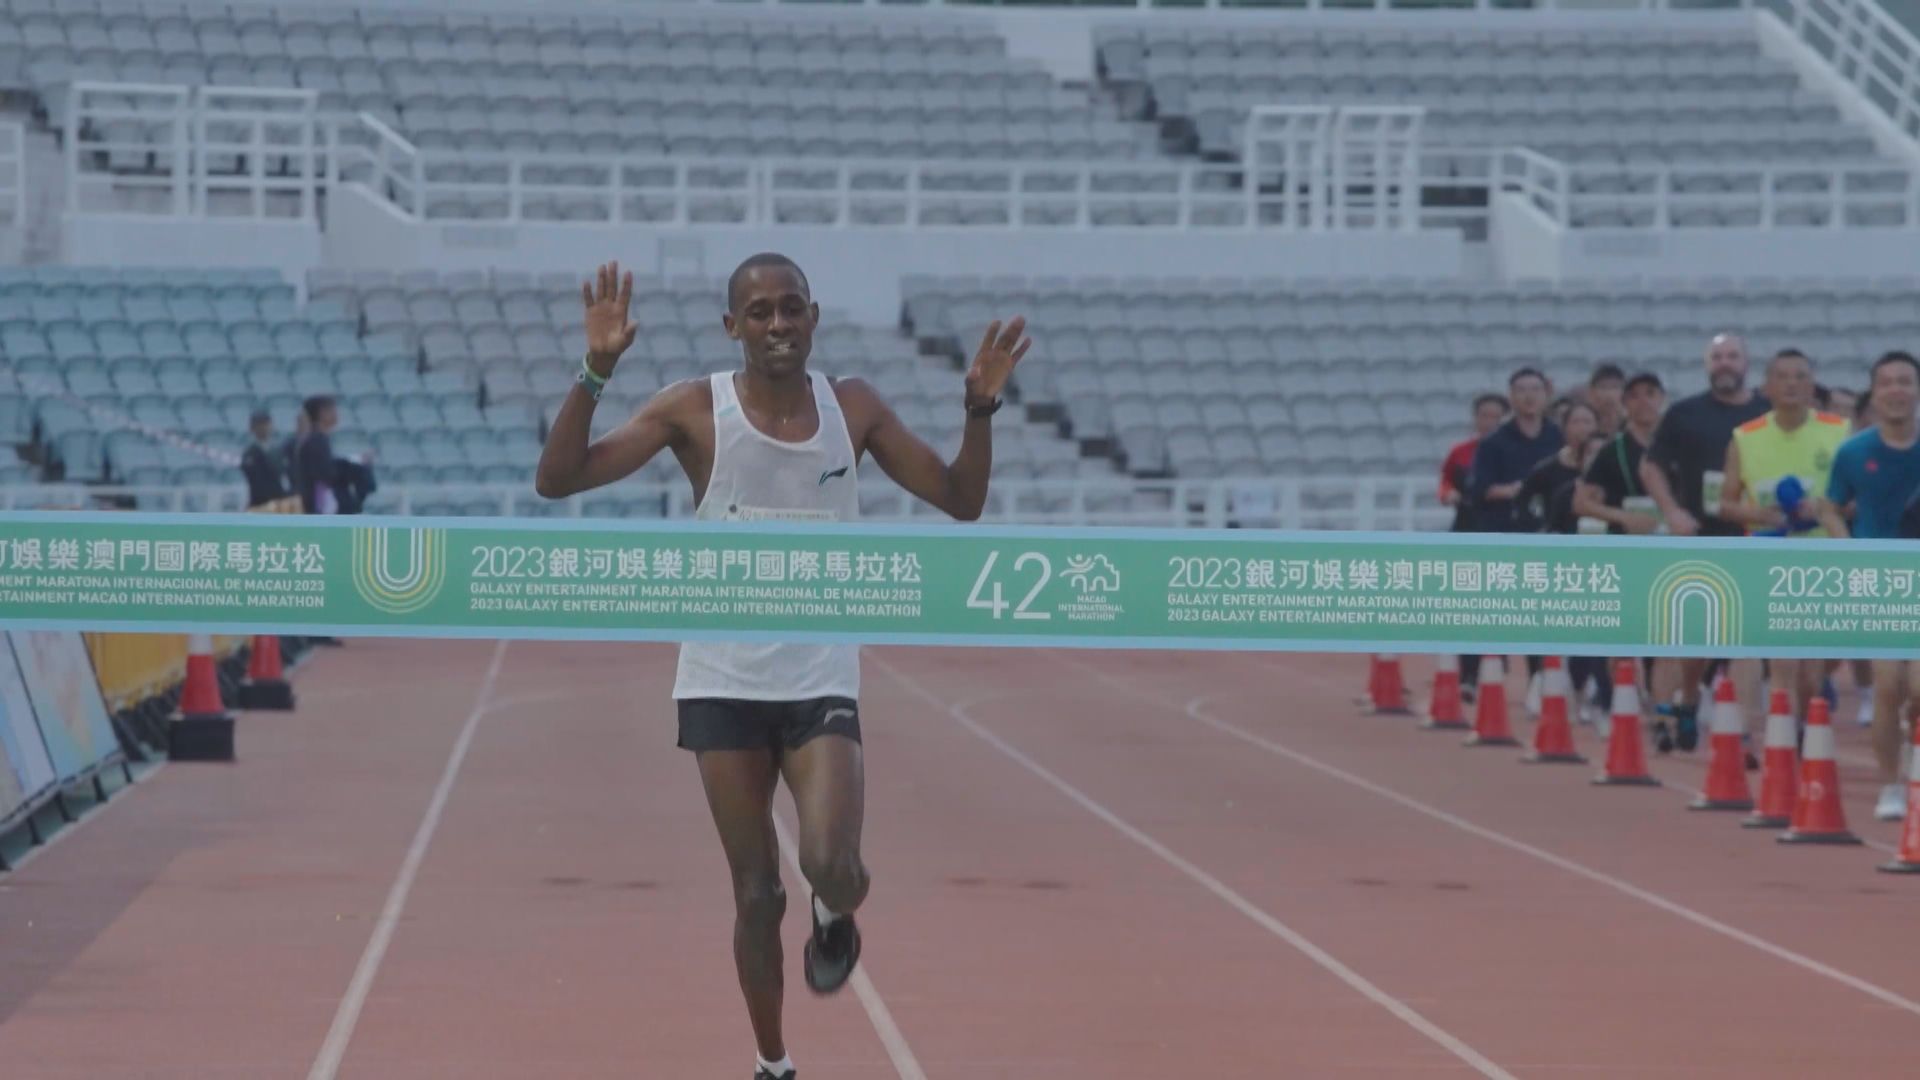 澳門馬拉松 埃塞俄比亞跑手包辦男女子組冠軍